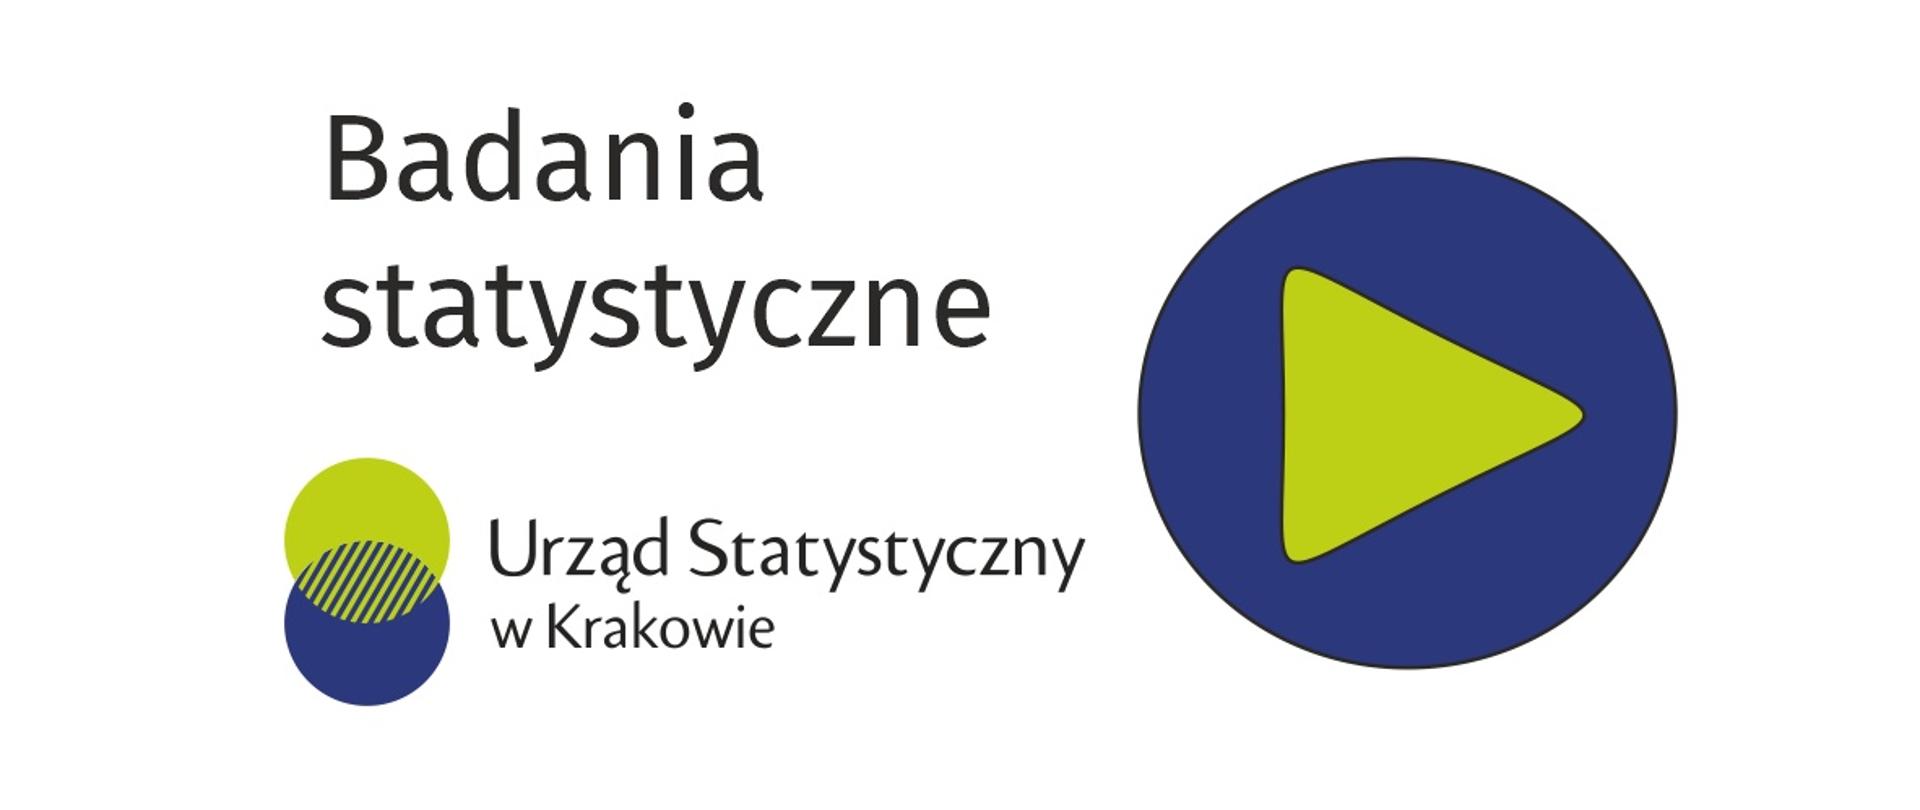 Na białym tle napis Badania statystyczne, logo Urzędu Statystycznego w Krakowie oraz symbol zielonego trójkąta o zaokrąglonych wierzchołkach umieszczonego w niebieskim kole.